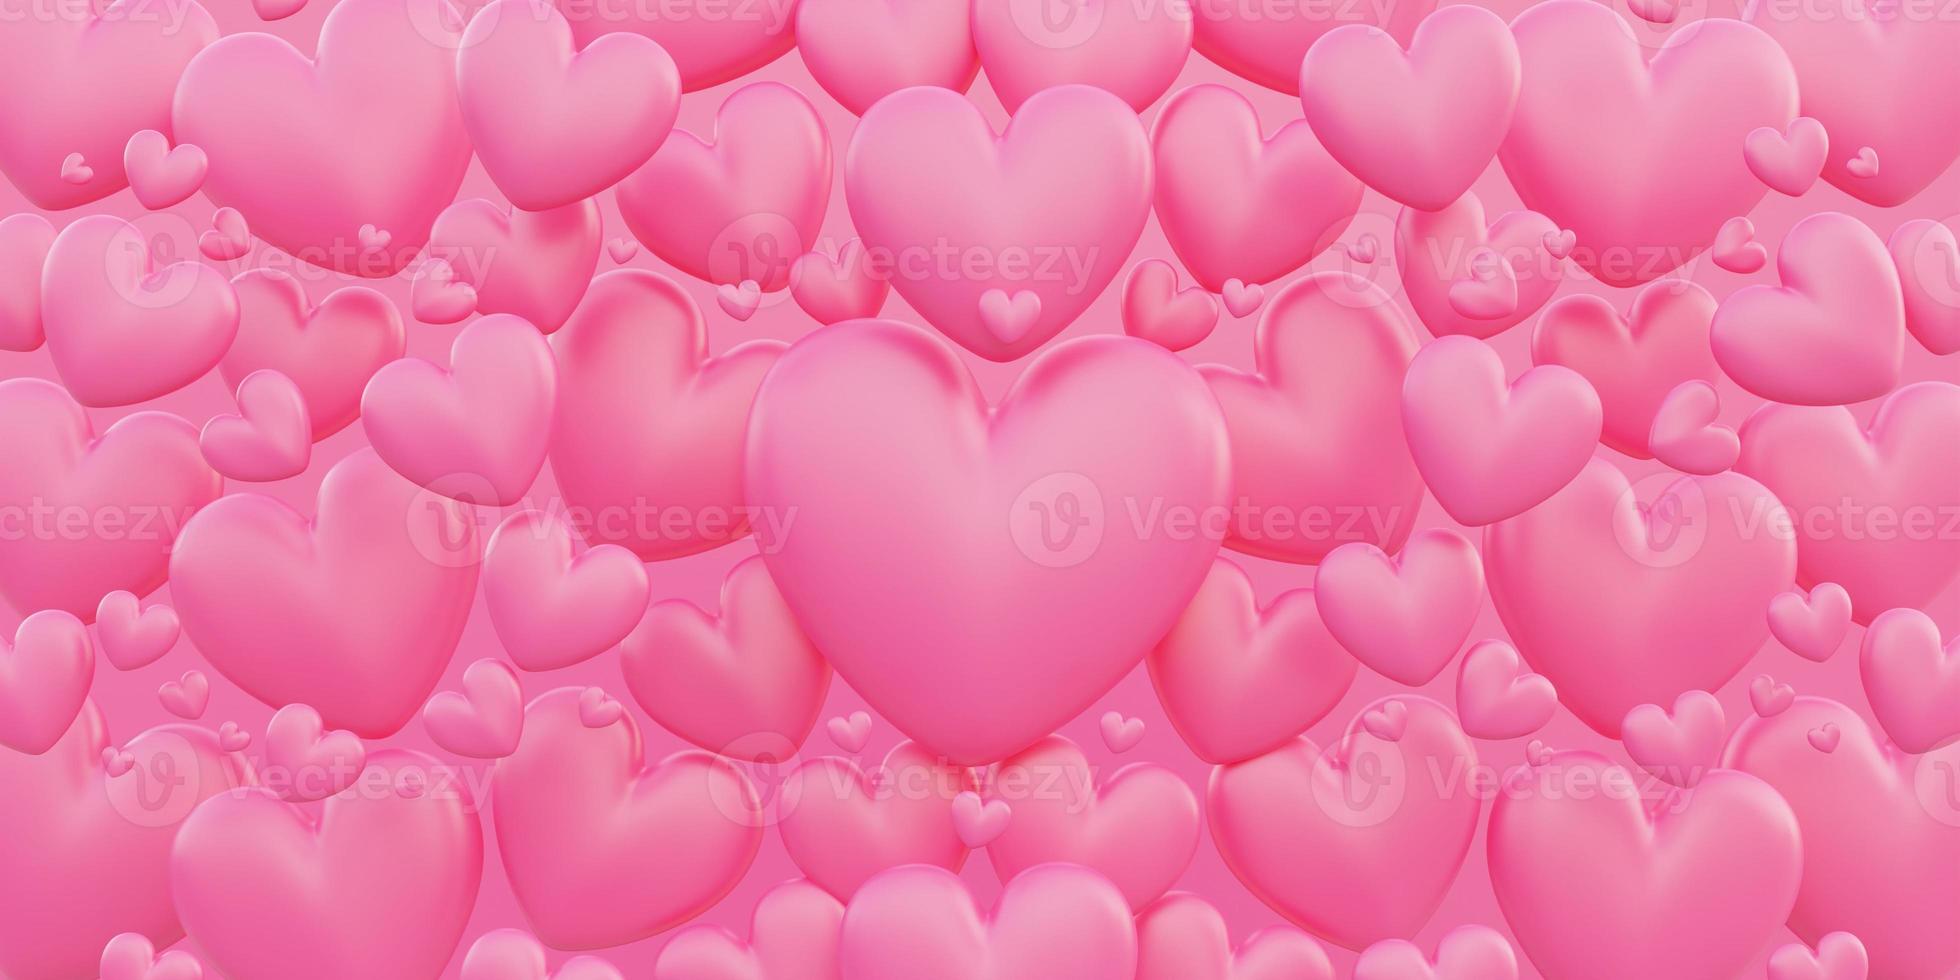 il giorno di san valentino, il concetto di amore, la forma del cuore rosa 3d si sovrappongono sullo sfondo foto